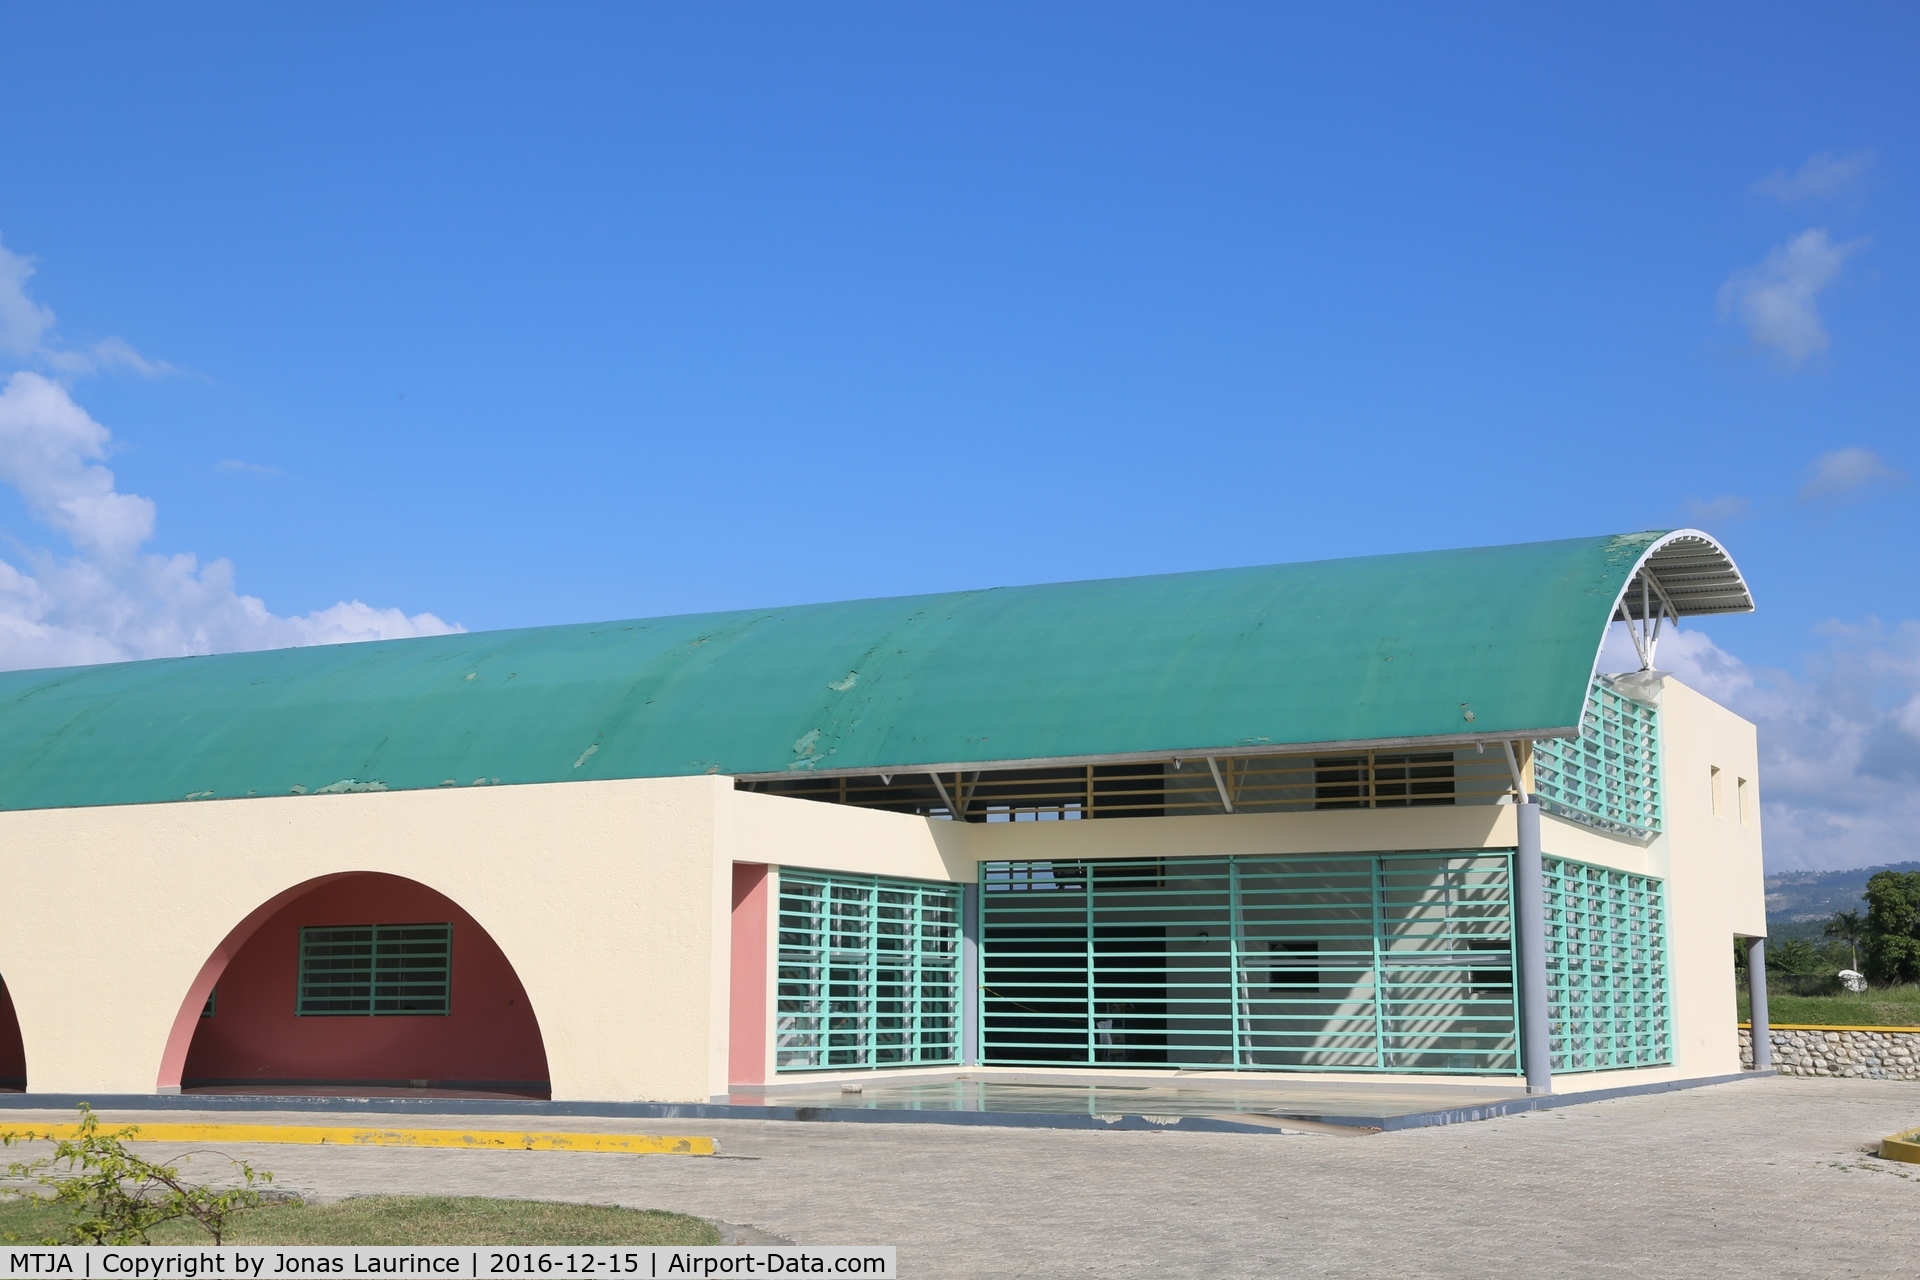 Jacmel Airport, Jacmel Haiti (MTJA) - Jacmel Airport Main Building